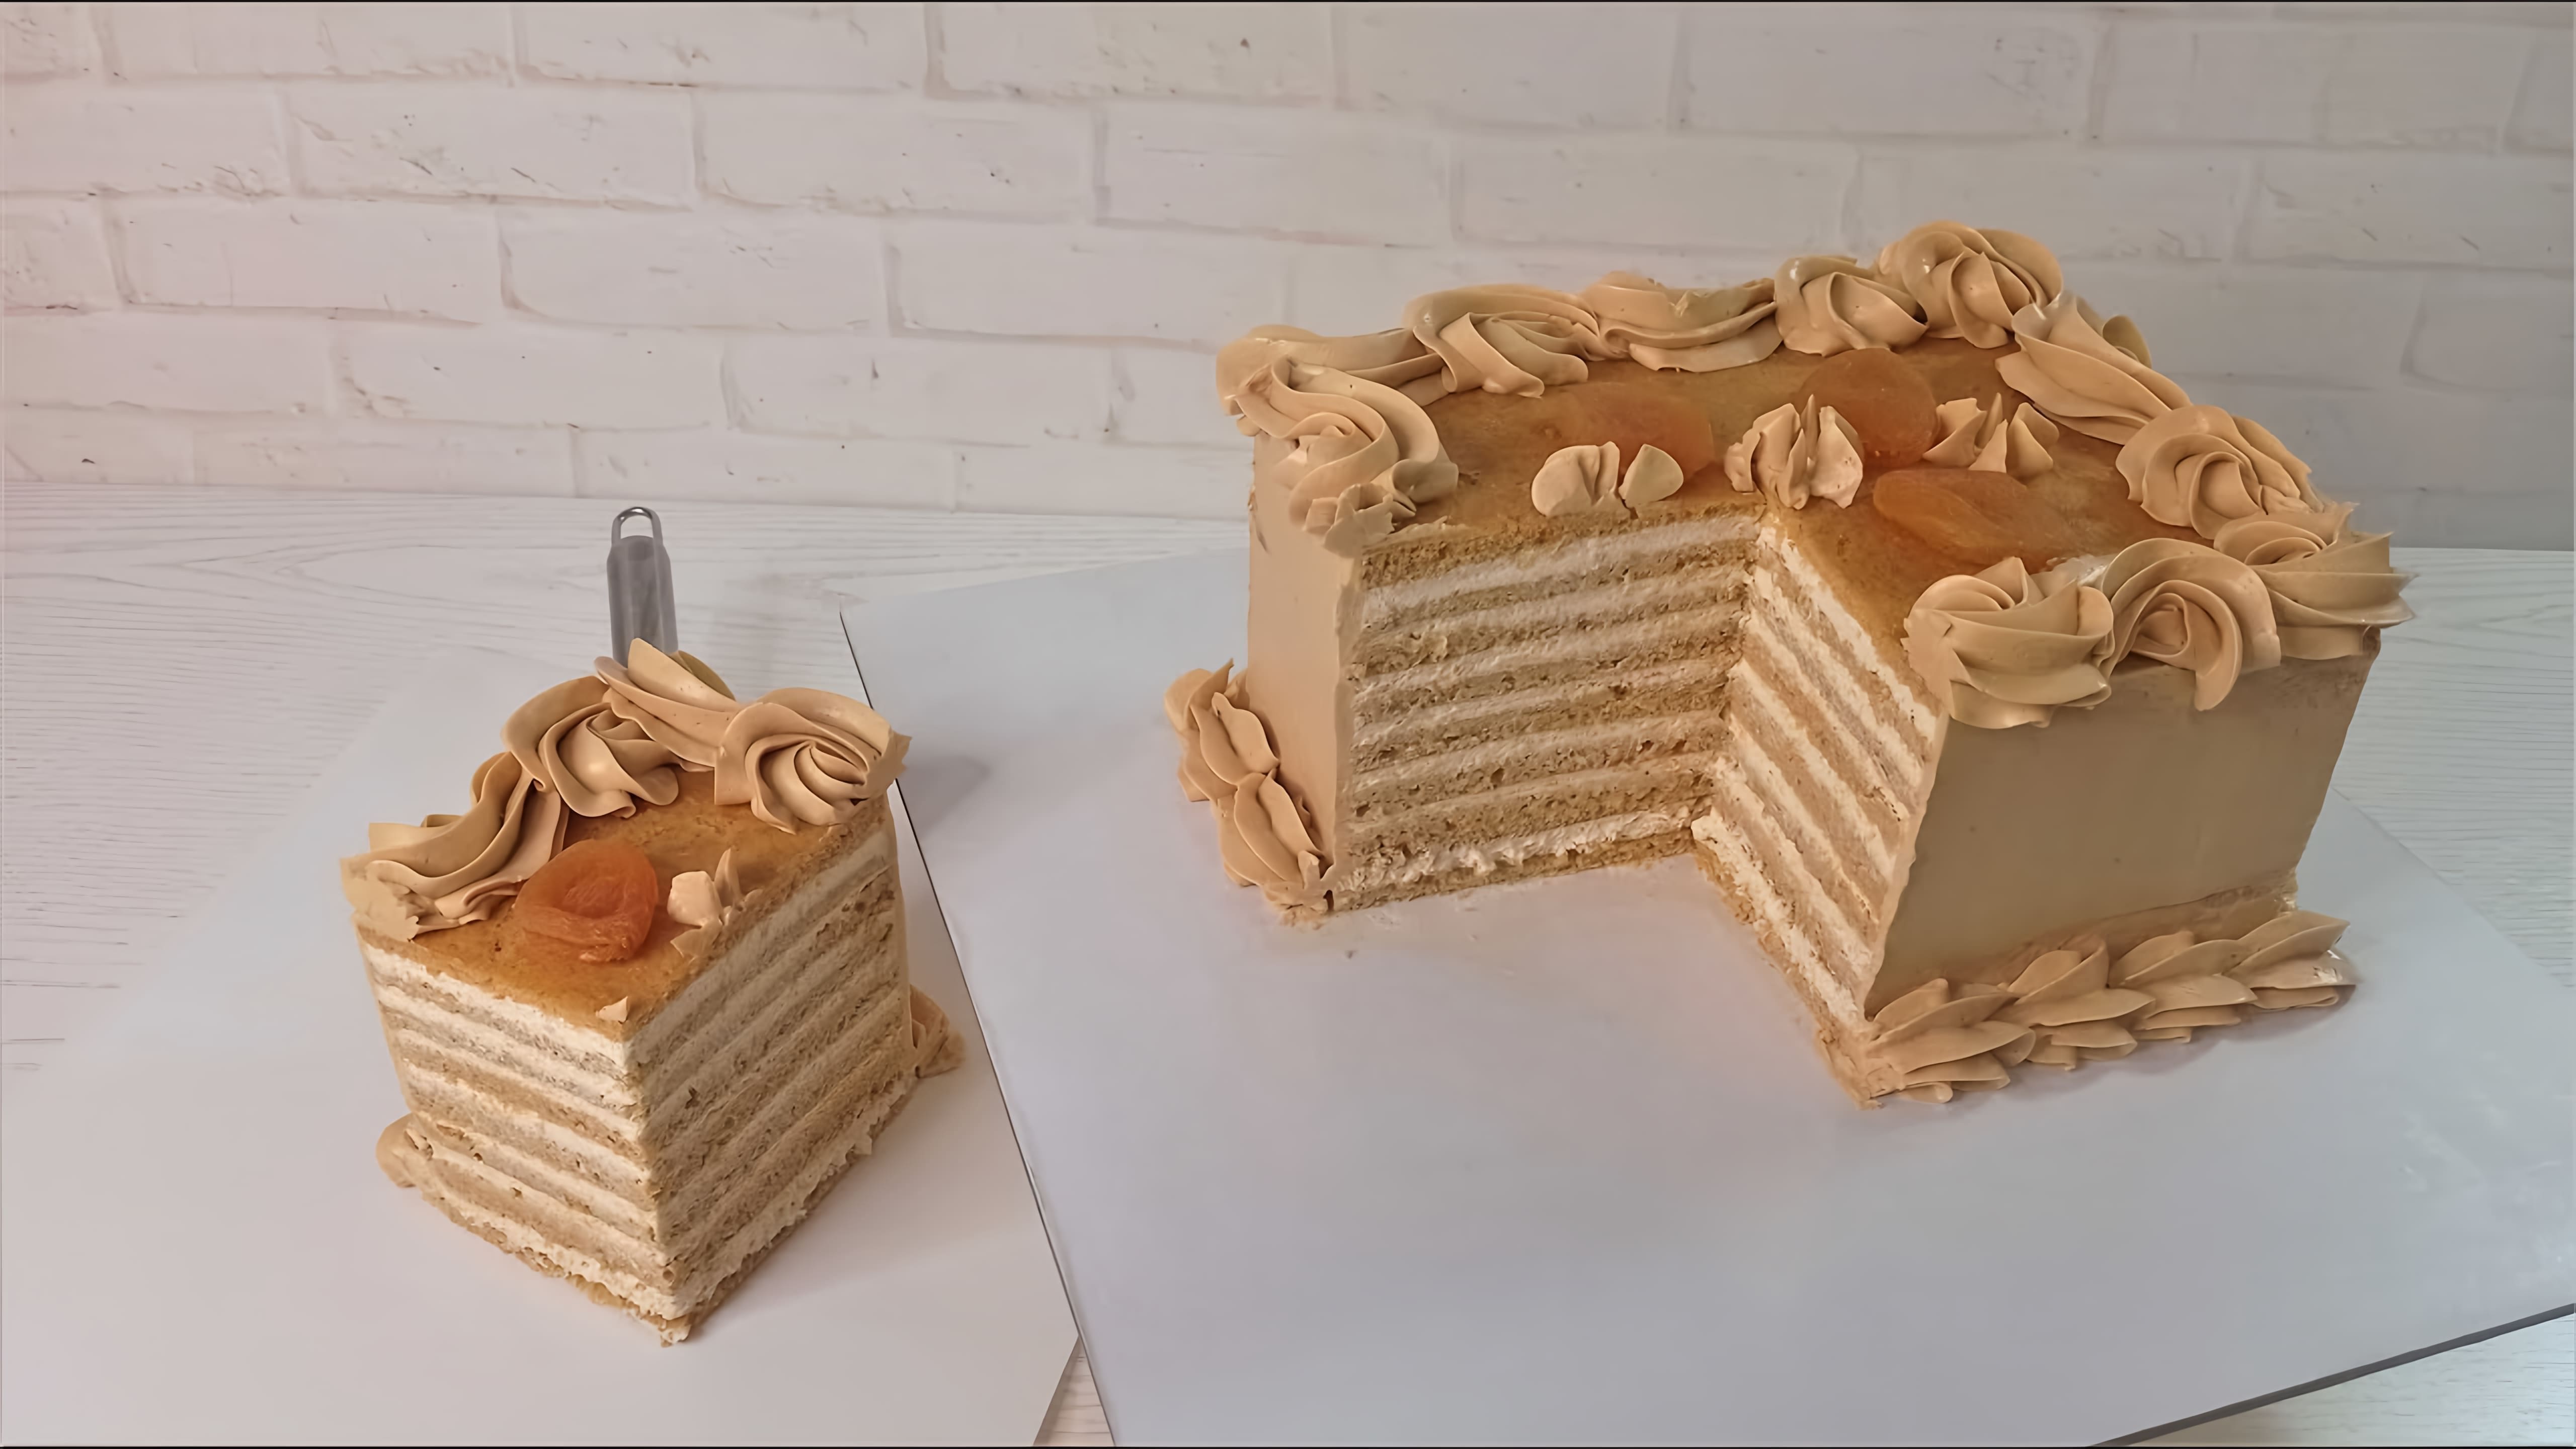 В этом видео демонстрируется рецепт торта "Карамельная молочная девочка" из Германии